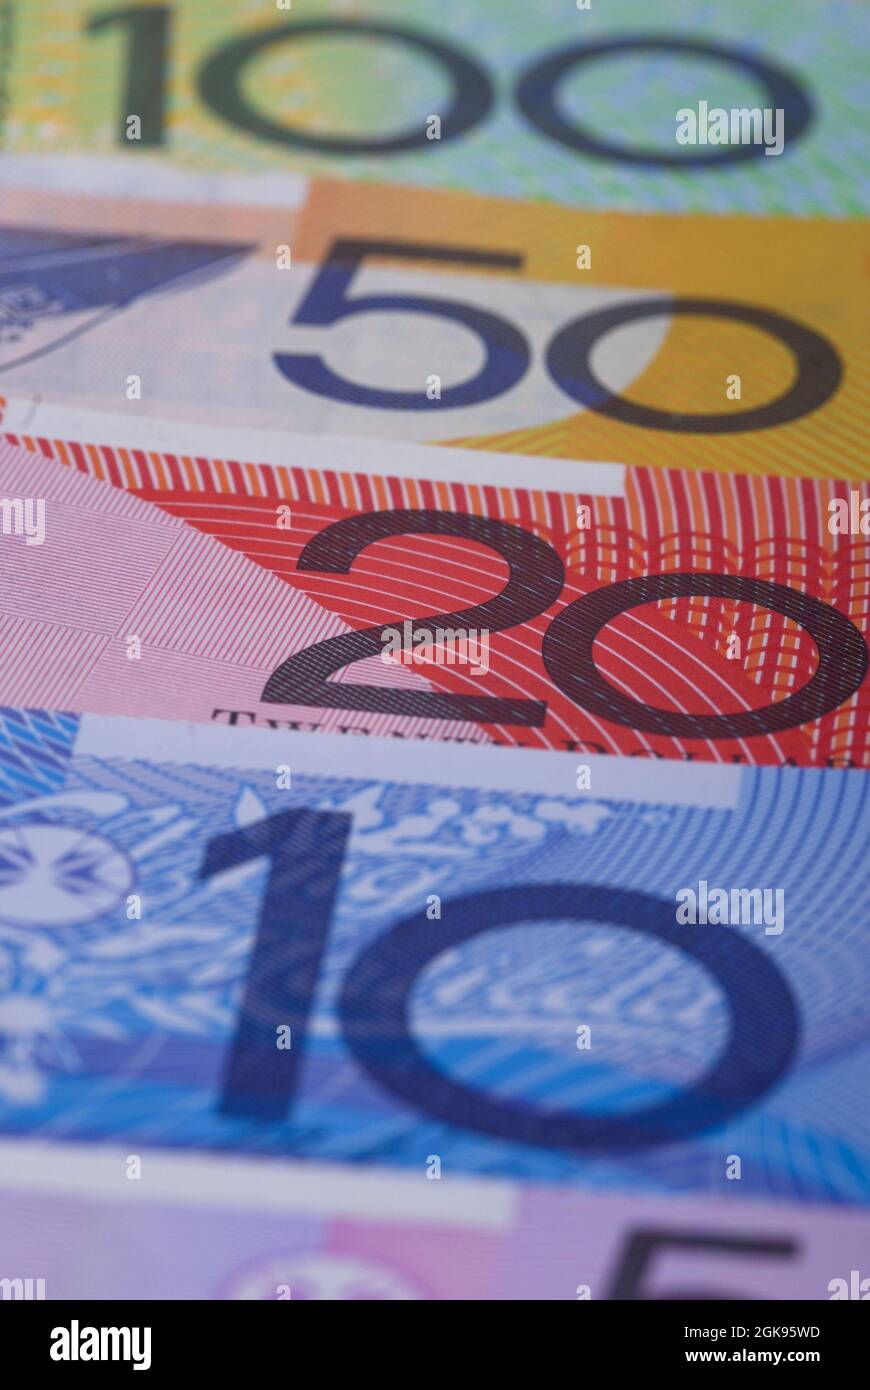 Australien dollar bills, Australia Stock Photo